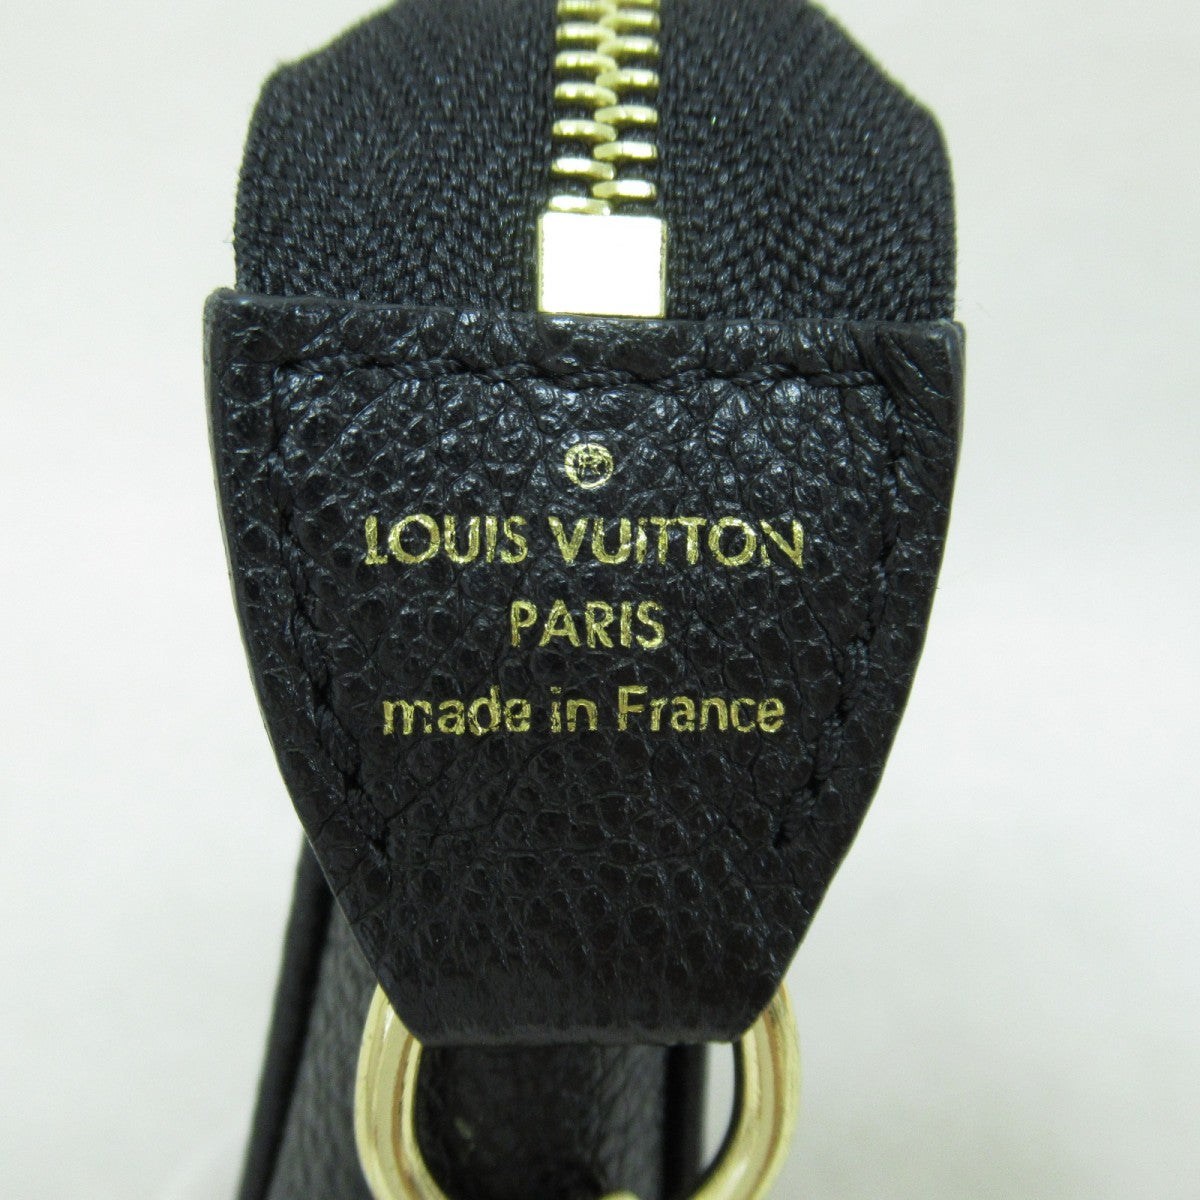 M80732 Louis Vuitton Monogram Empreinte Mini Pochette Accessoires